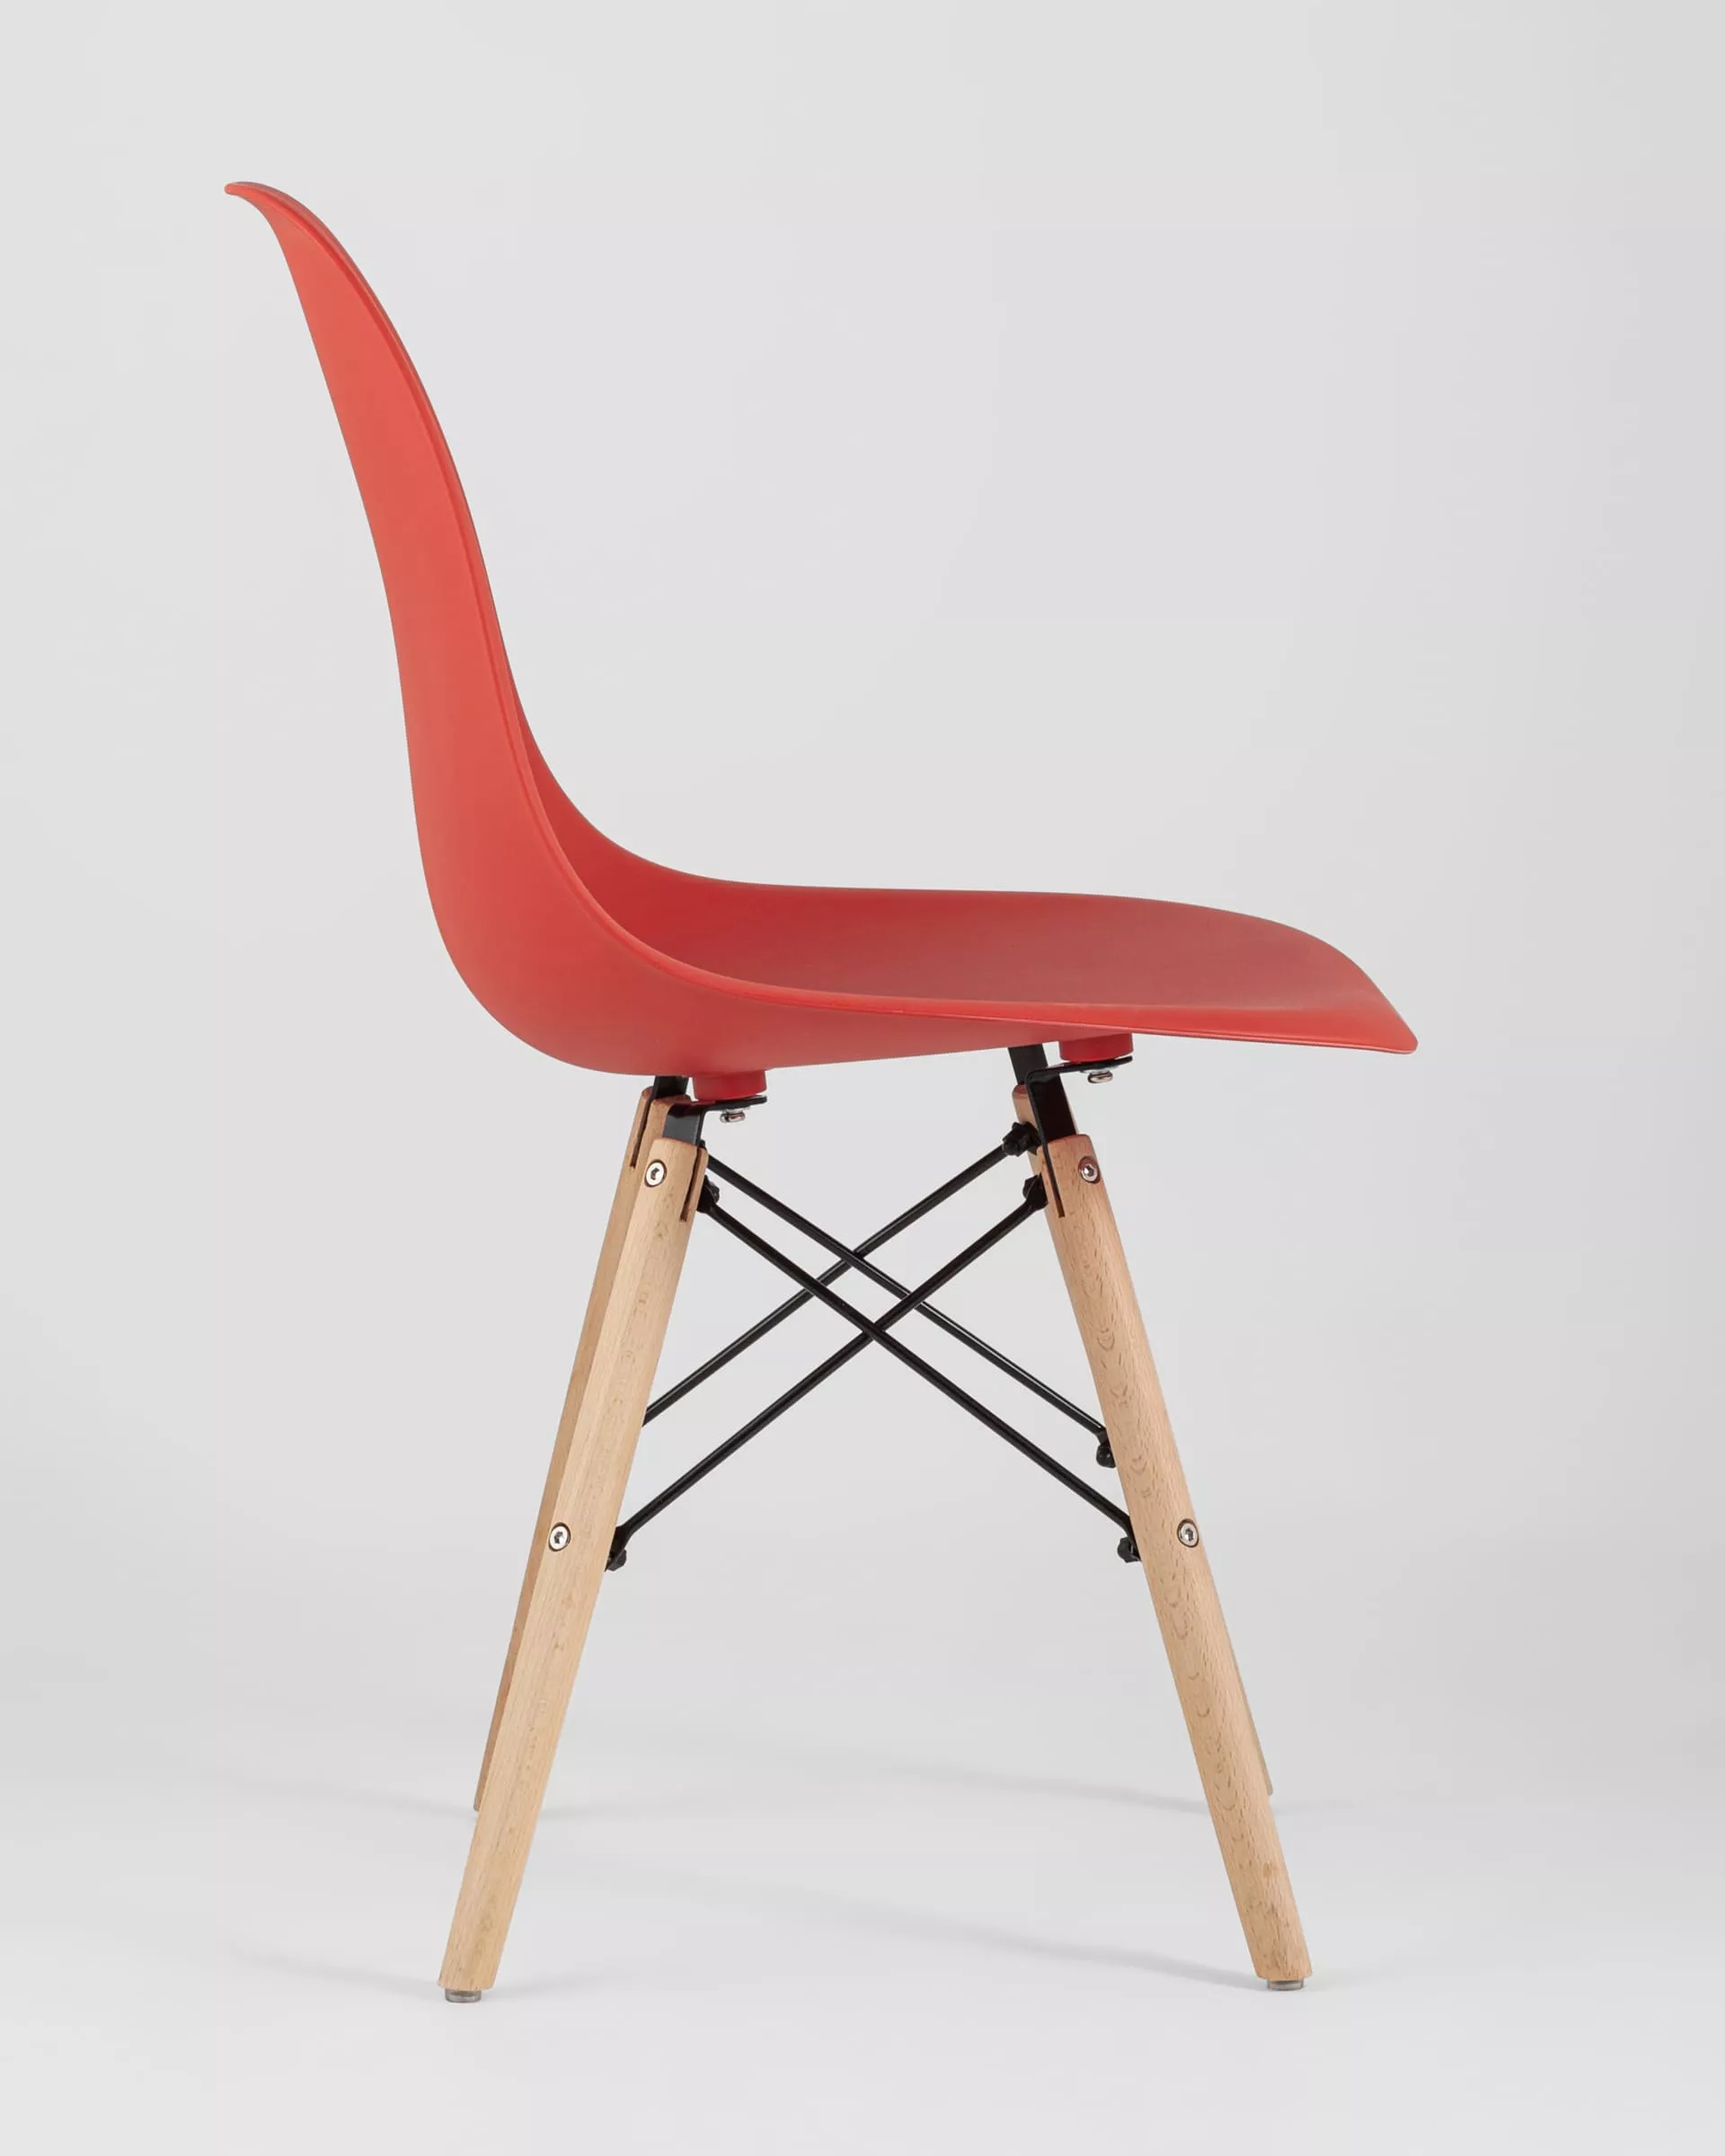 Комплект стульев Eames Style DSW красный x4 шт